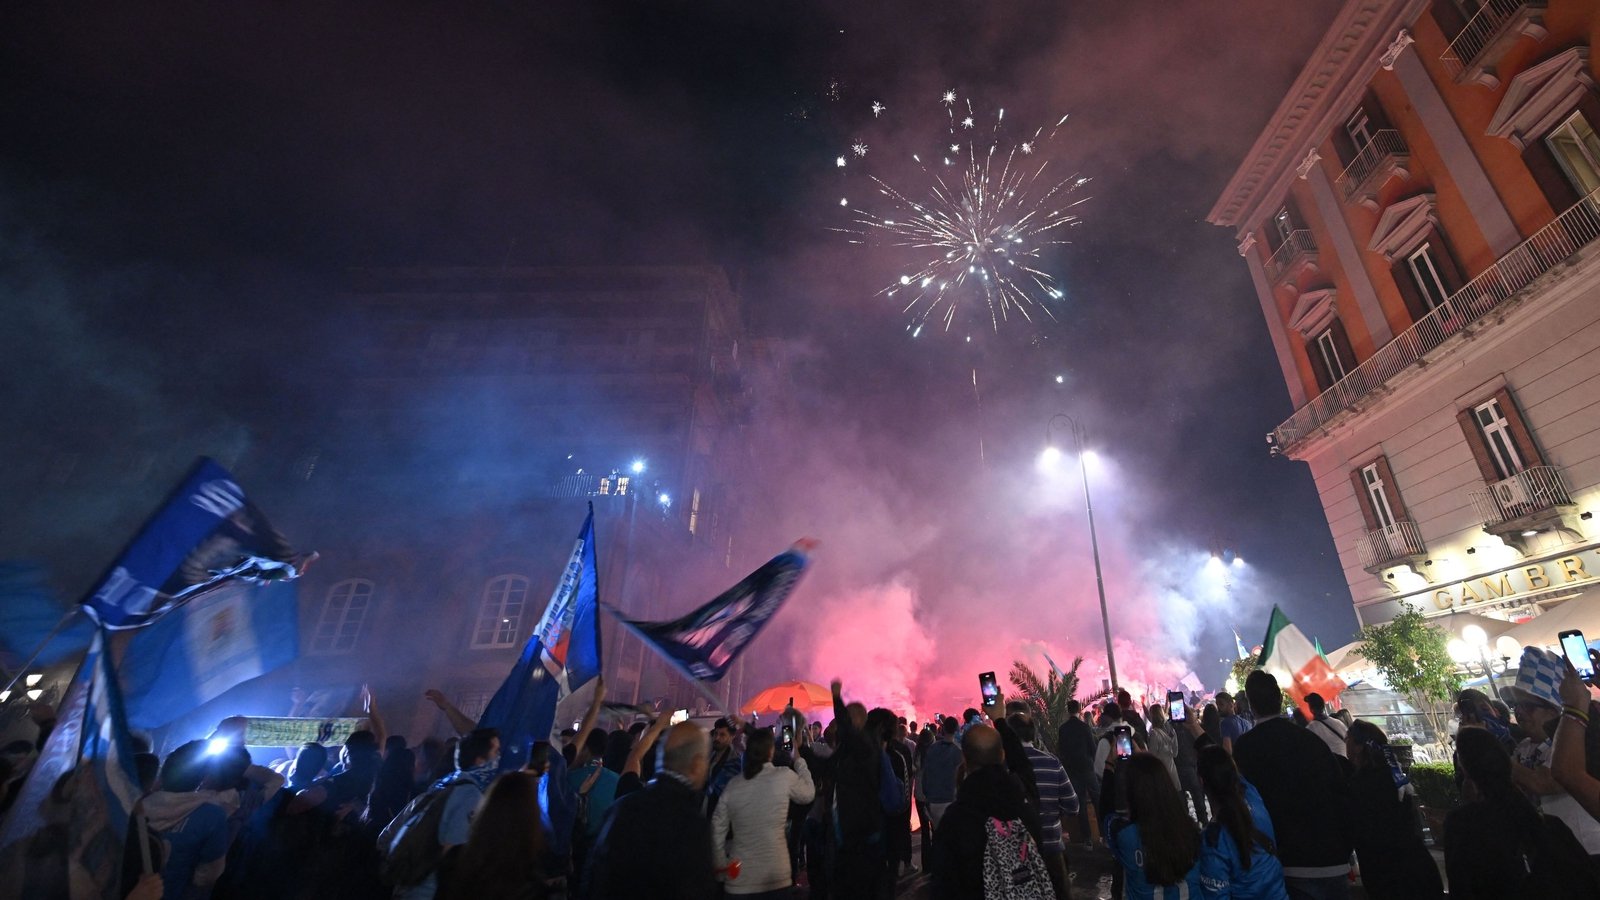 Ẩu đả, bạo loạn gây chết người sau khi Napoli vô địch Serie A - Bóng Đá